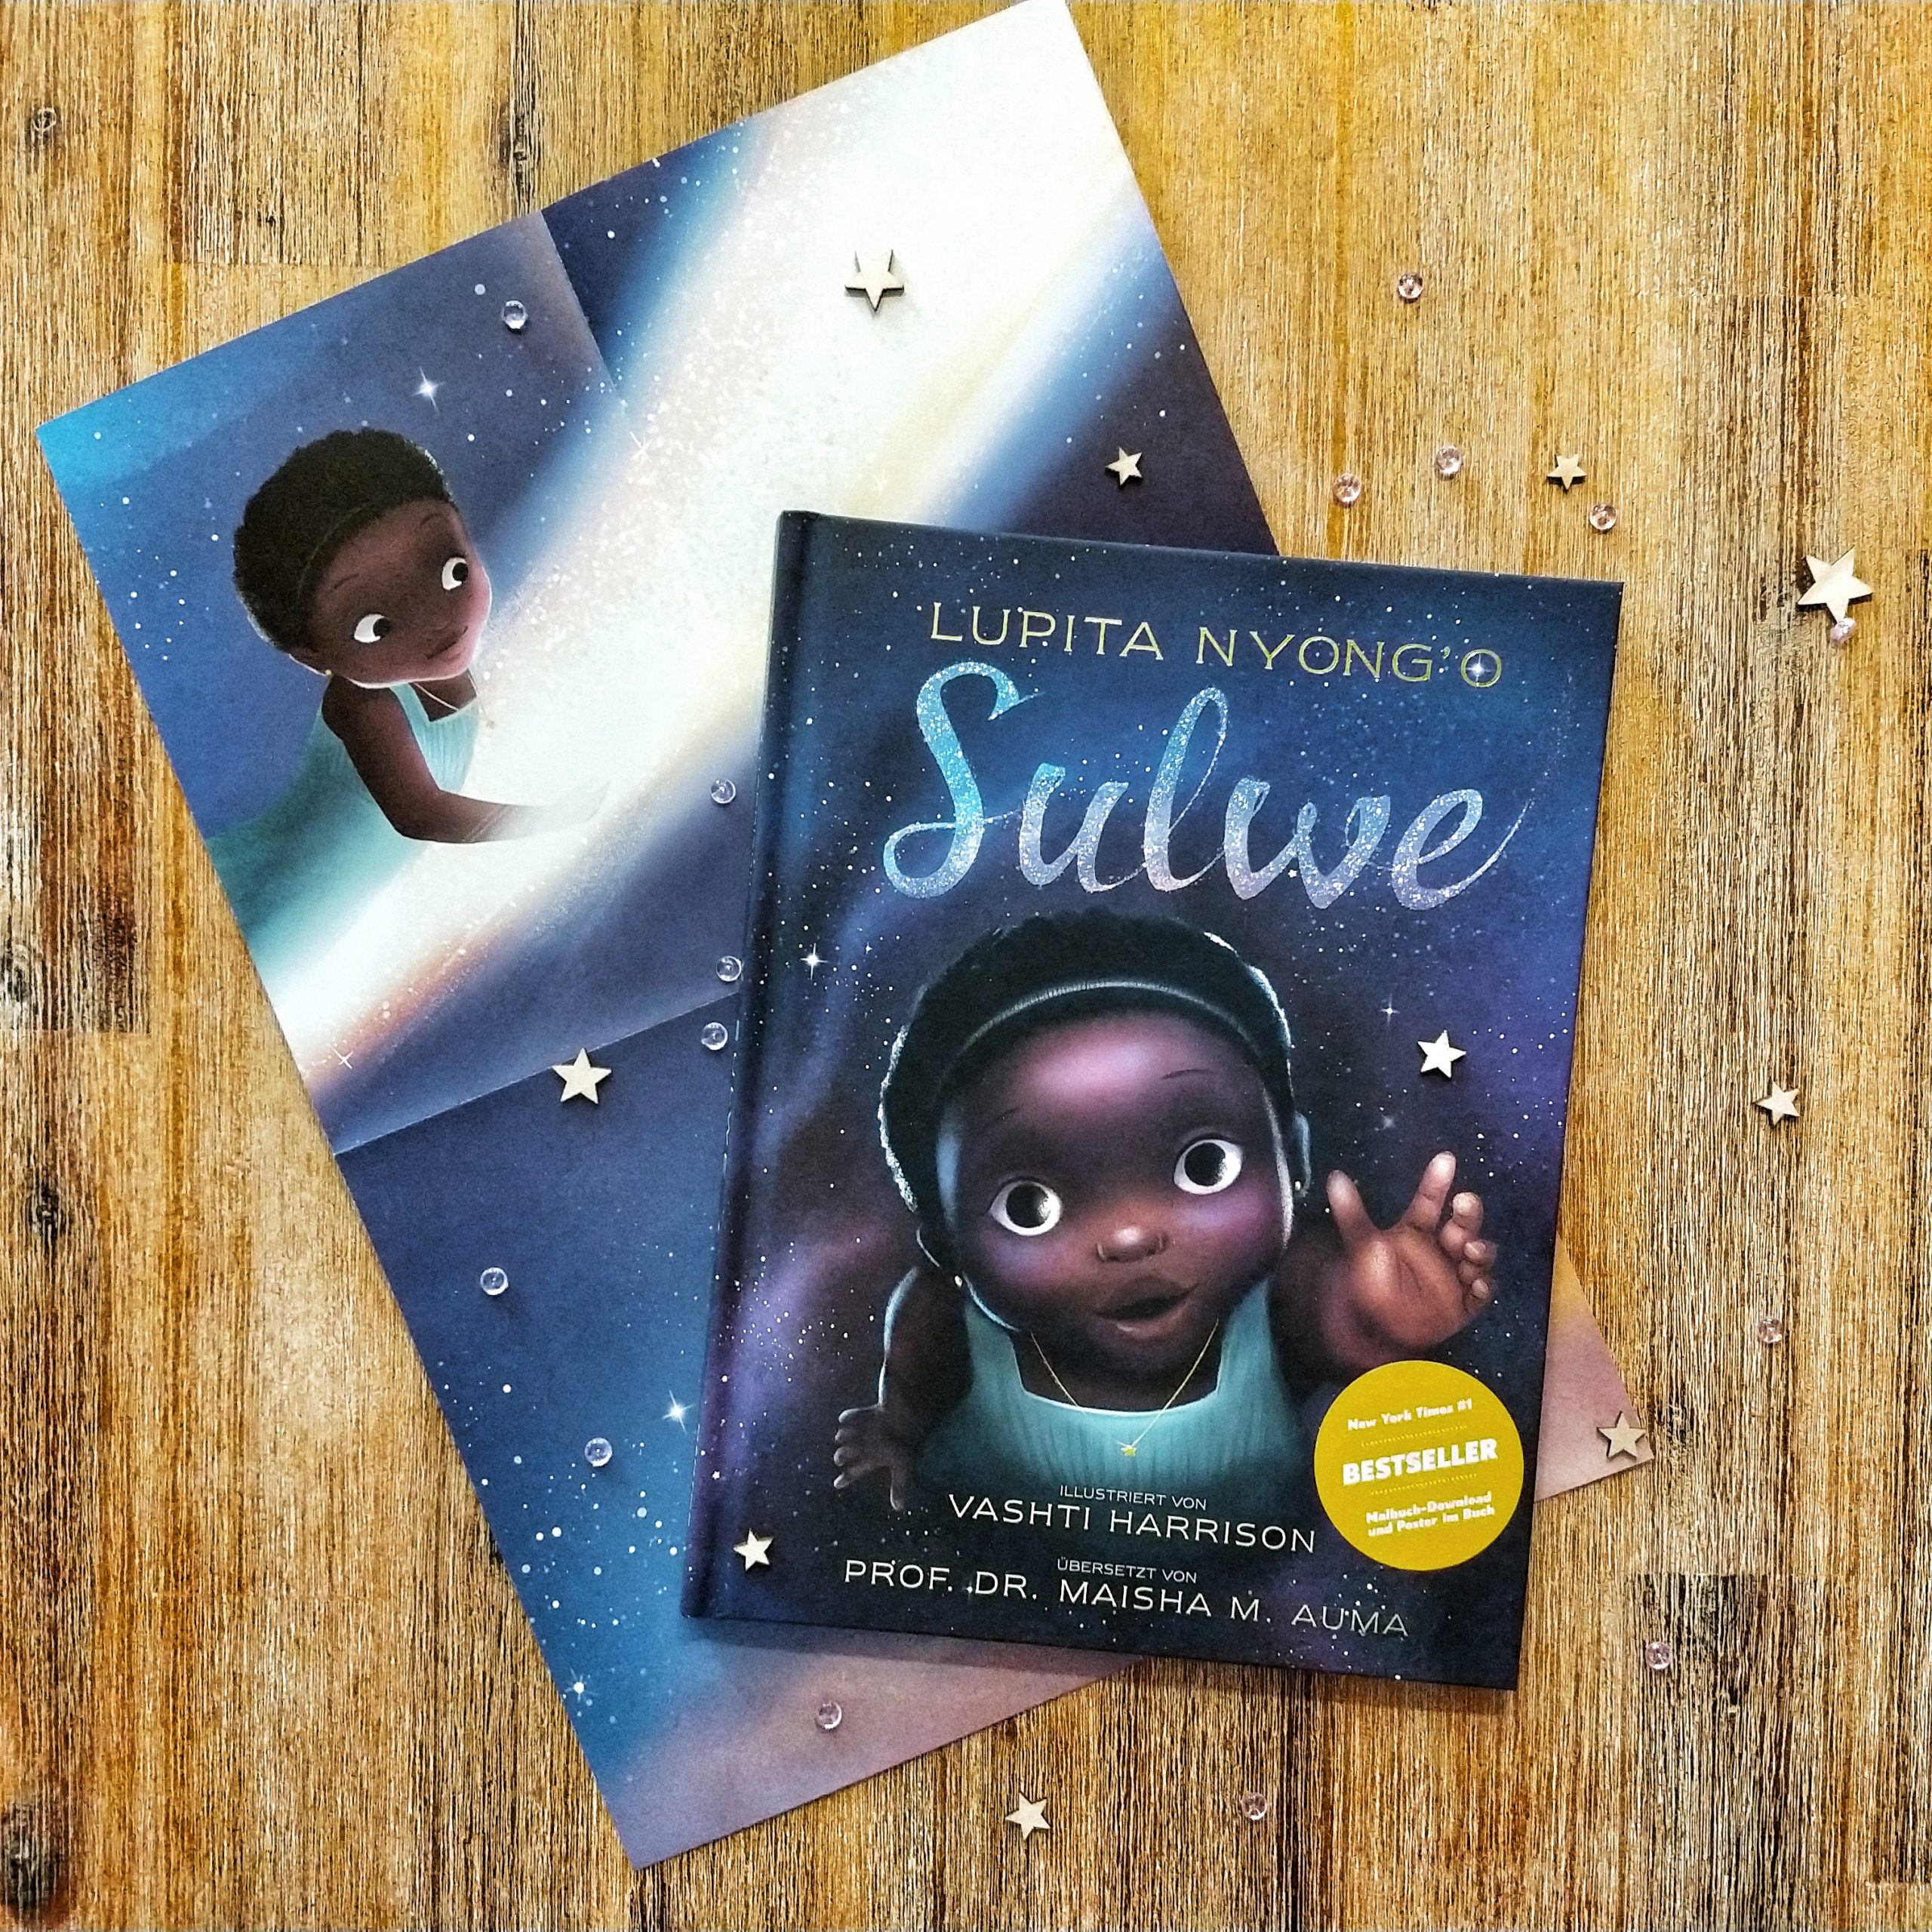 Auf einem Holzhintergrund liegt das Buch "Sulwe". Auf dem Cover ist die Illustration eines Schwarzen Mädchens zu sehen, das mit der Hand nach oben greift. Das Buch liegt auf einem halb zusammengefalteten Plakat, das Sulwe zeigt, die auf der Sternschnuppe reitet.